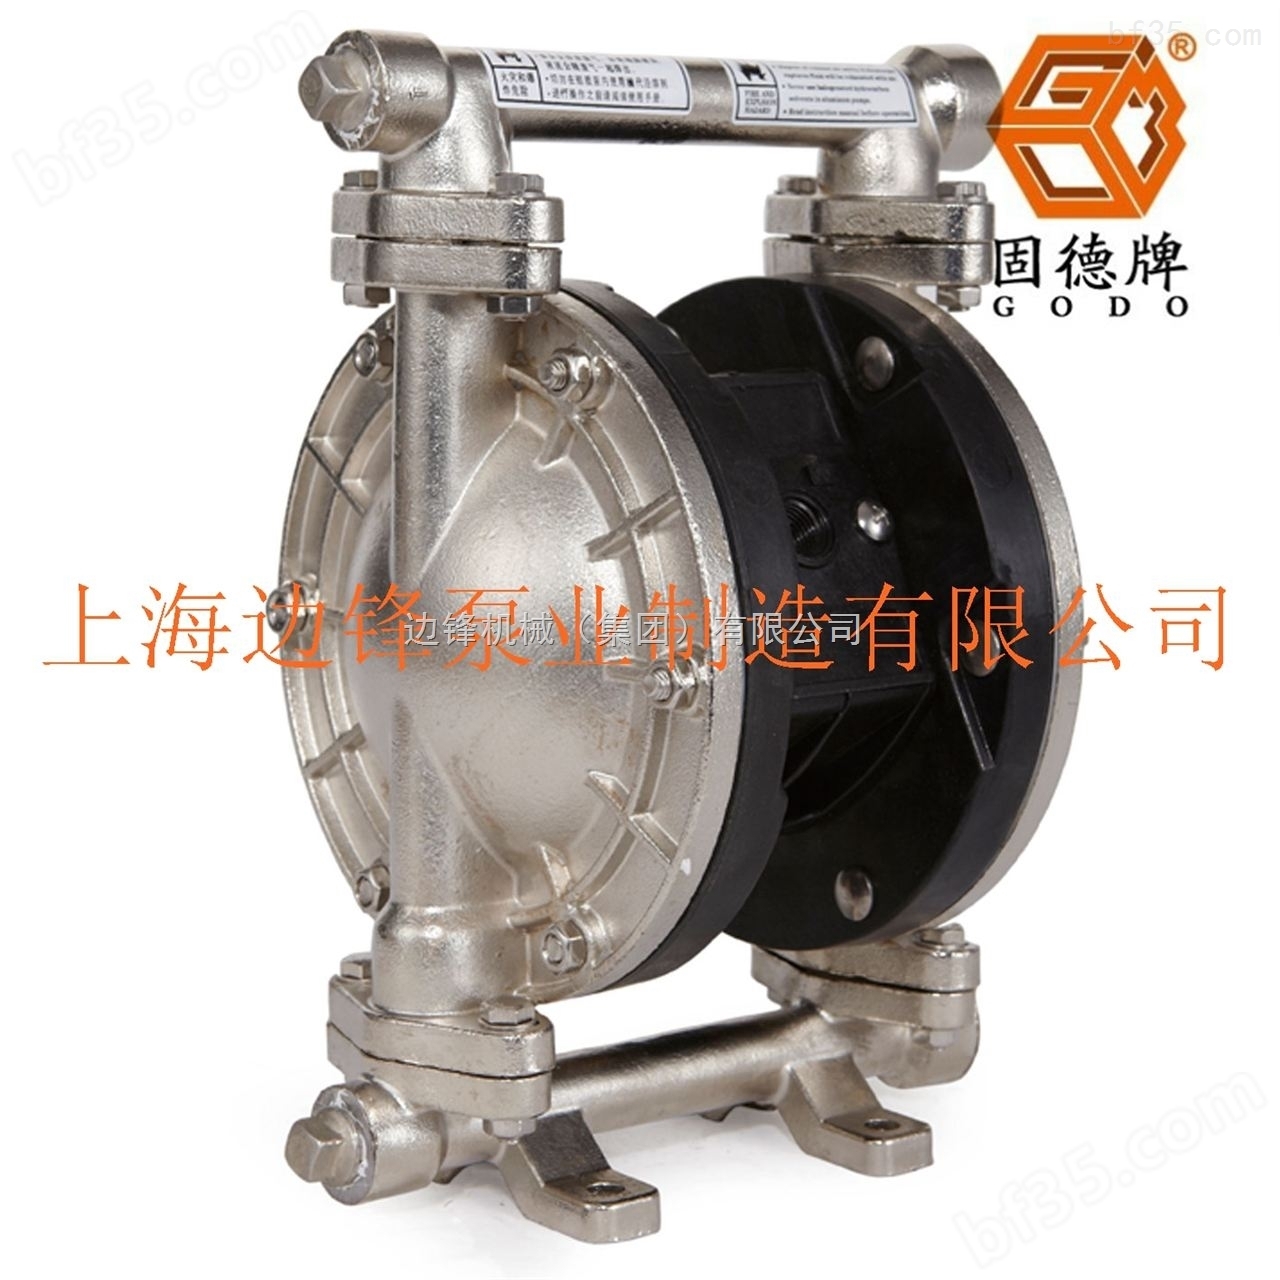 *3分口径胶水涂料输送泵QBY3-10LF广州边锋泵业固德牌GODO气动隔膜泵